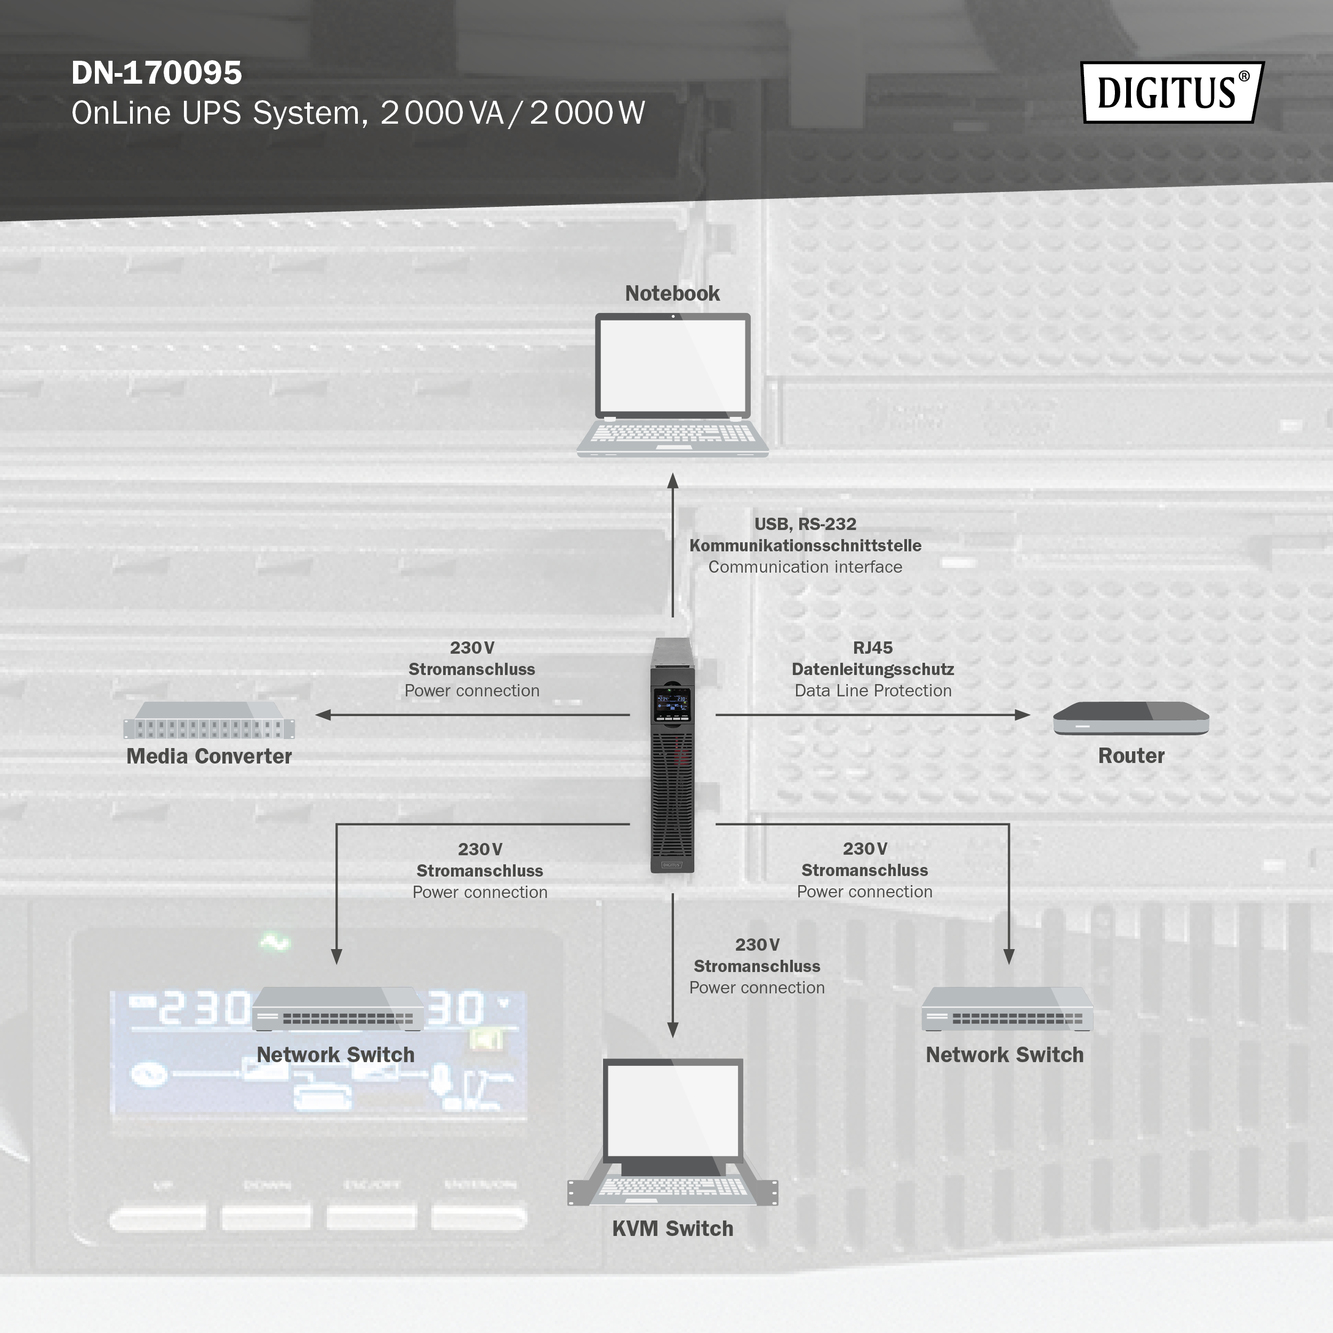  DIGITUS OnLine UPS system, 2000 VA / 2000 W 